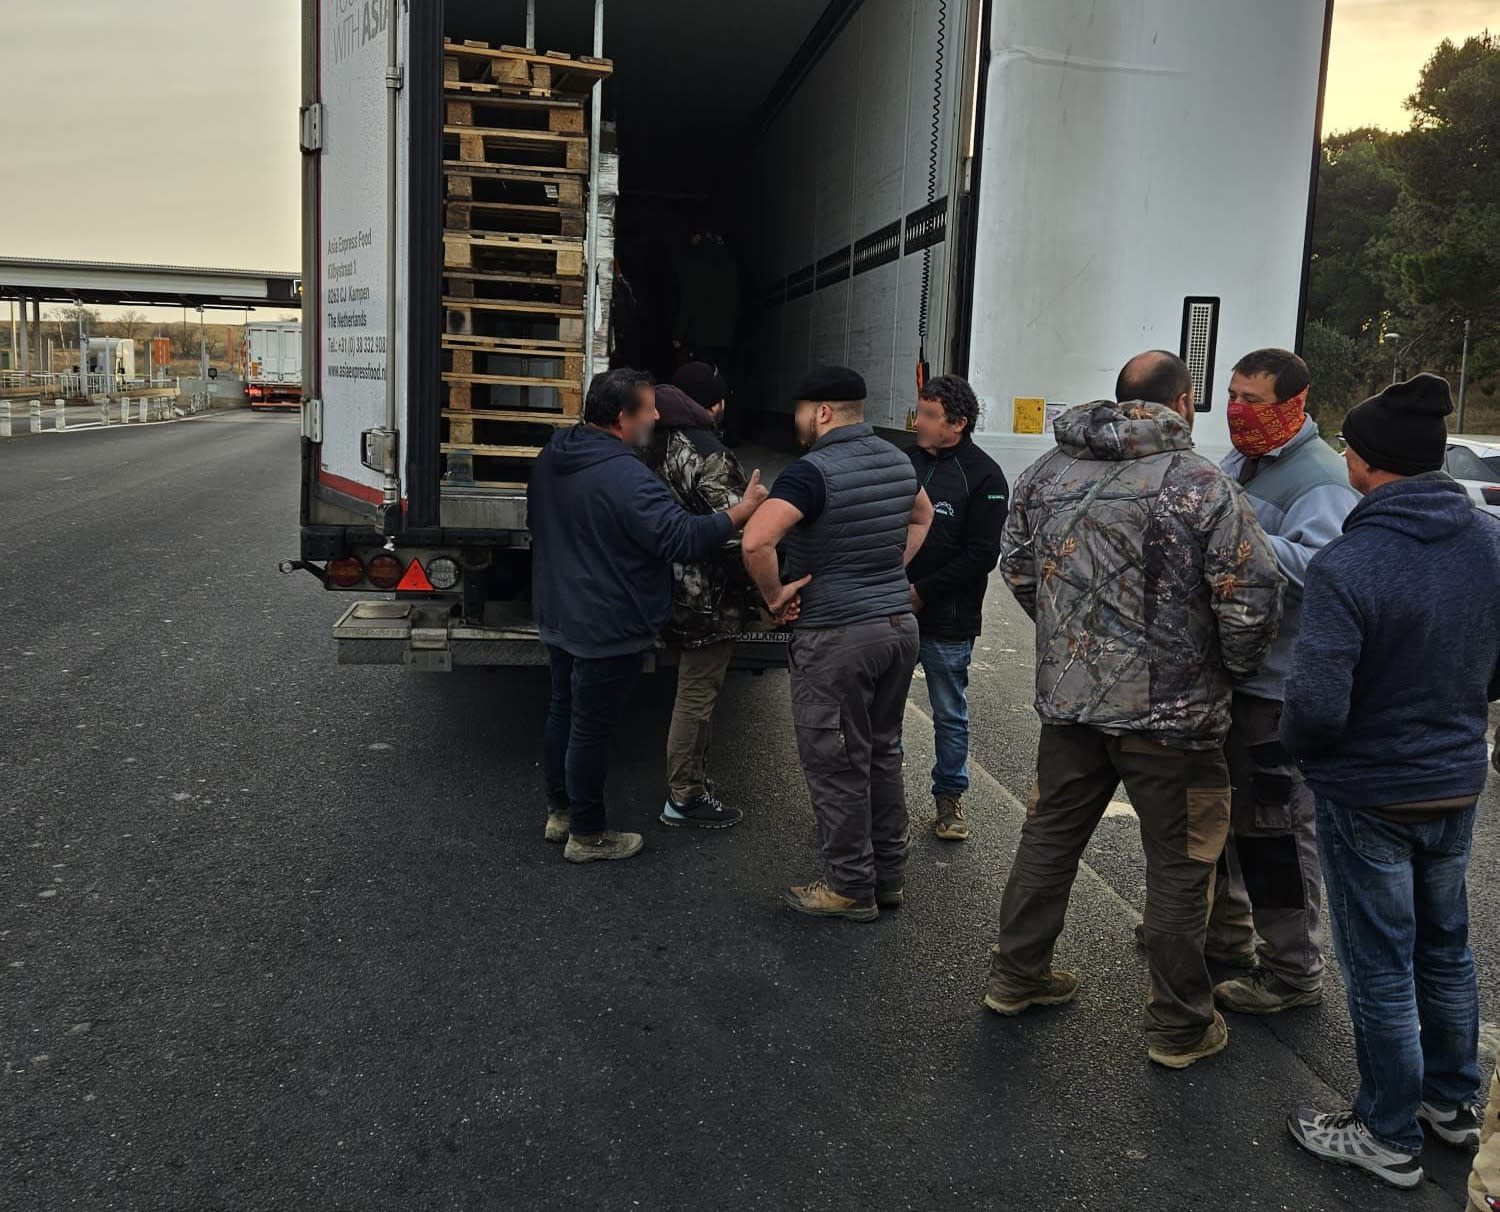 Vrachtwagen van Peter leeggeroofd door boze Franse boeren: 'Verdrietig'